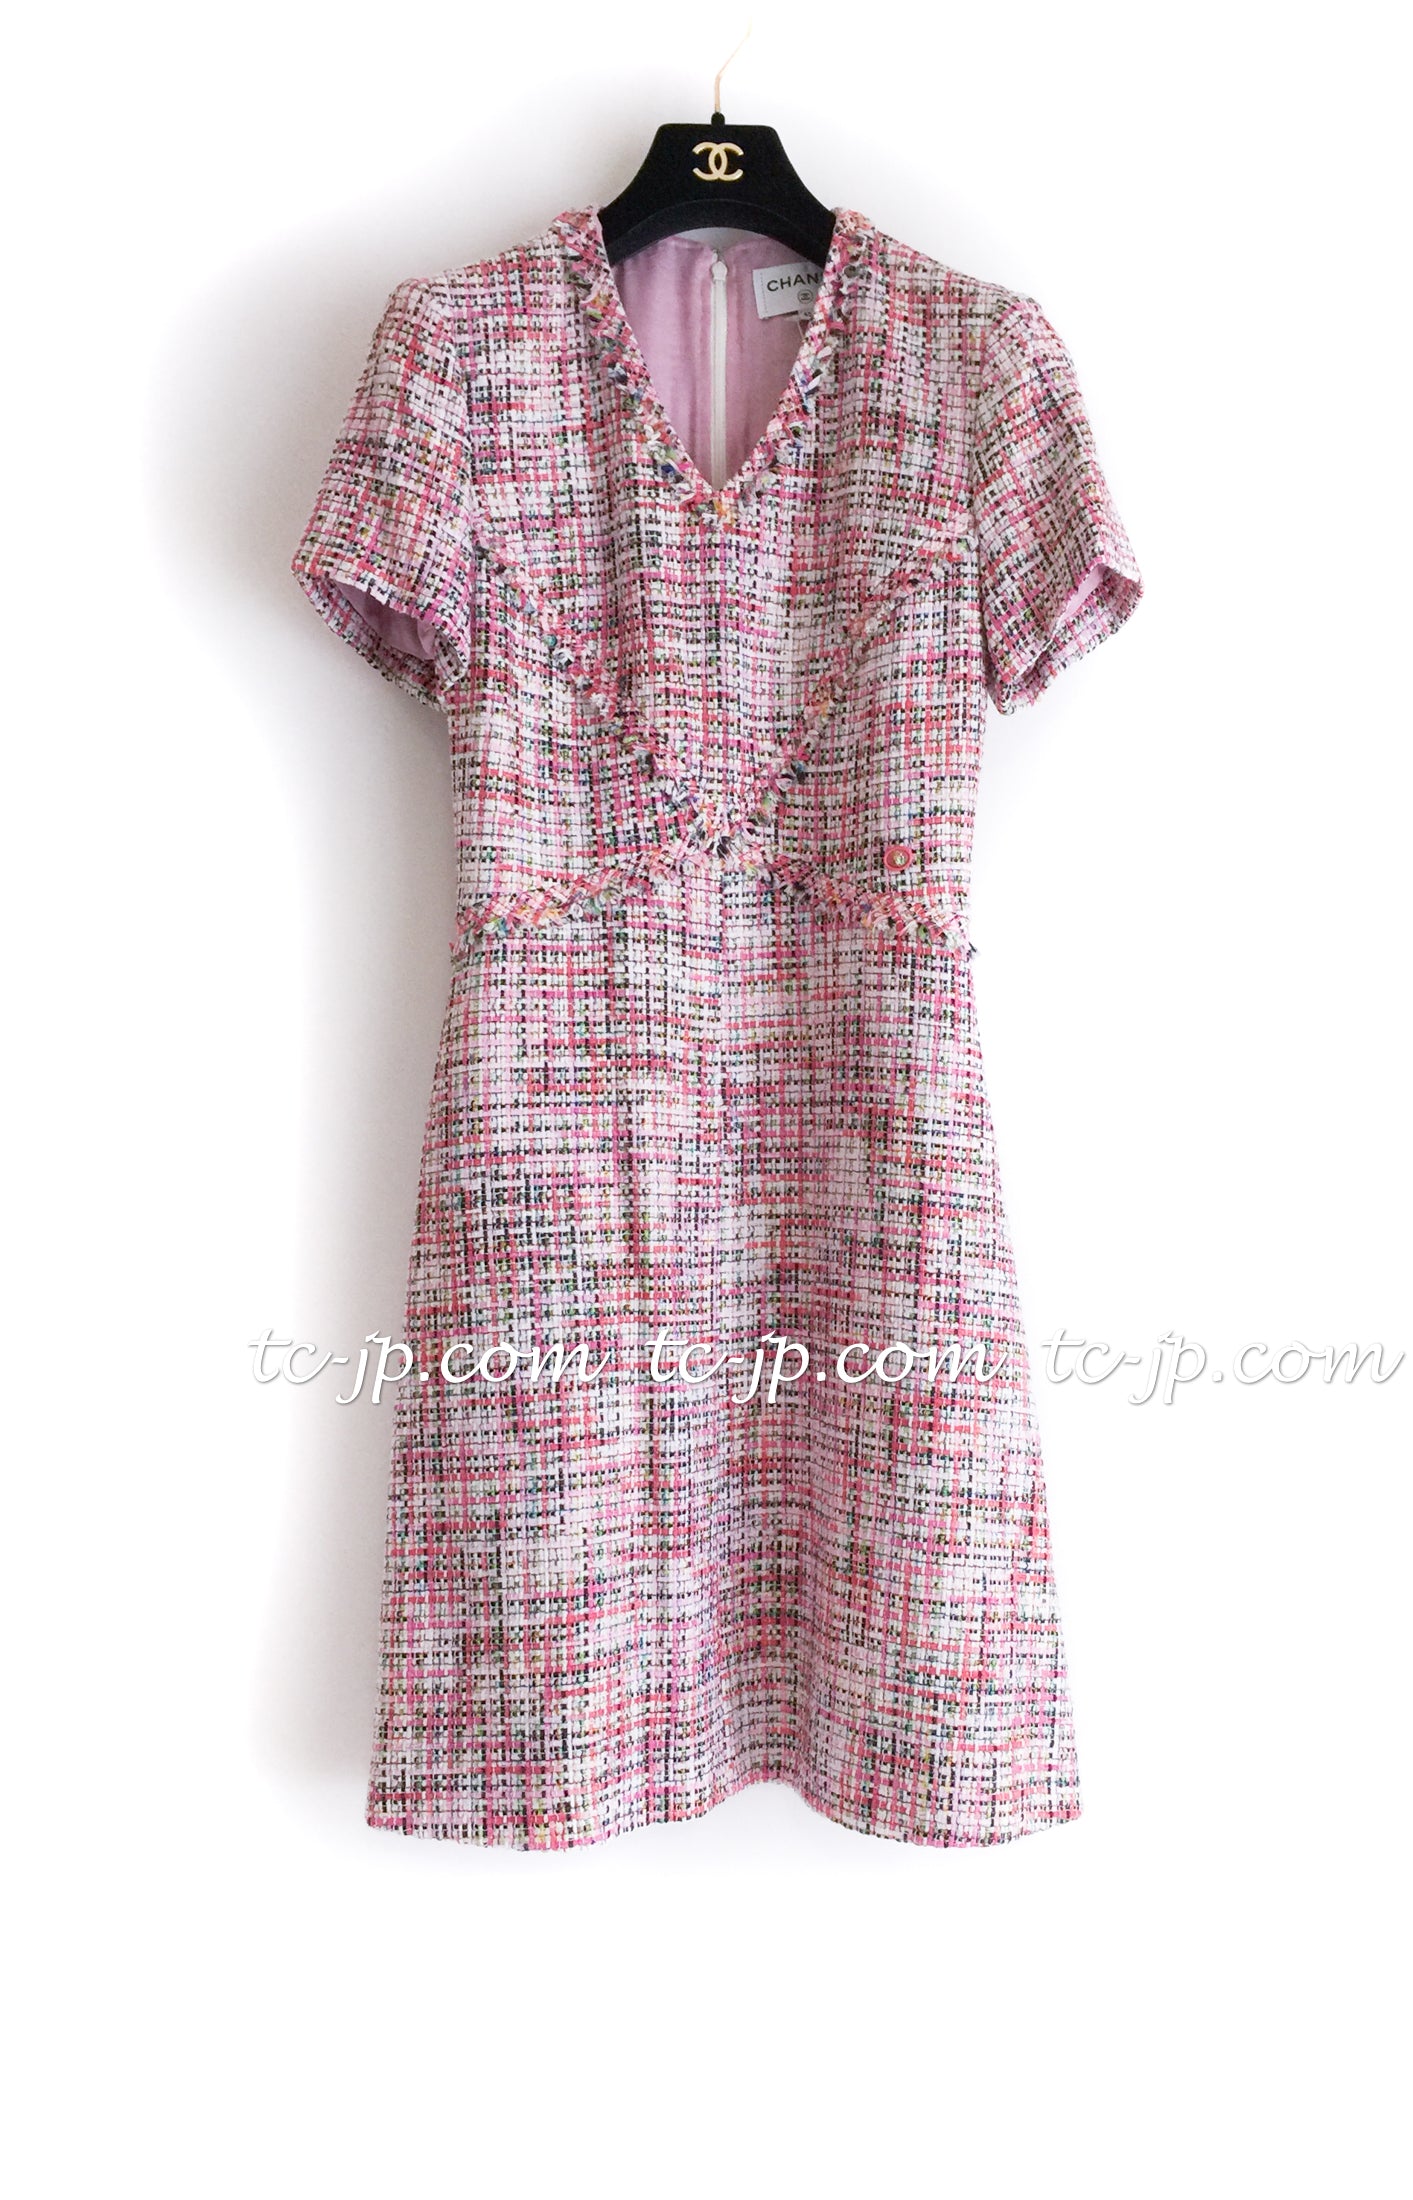 CHANEL 17PS Pink Multi Cotton Tweed Dress 34 38 シャネル ピンク マルチカラー コットン ツイード  ワンピース 即発